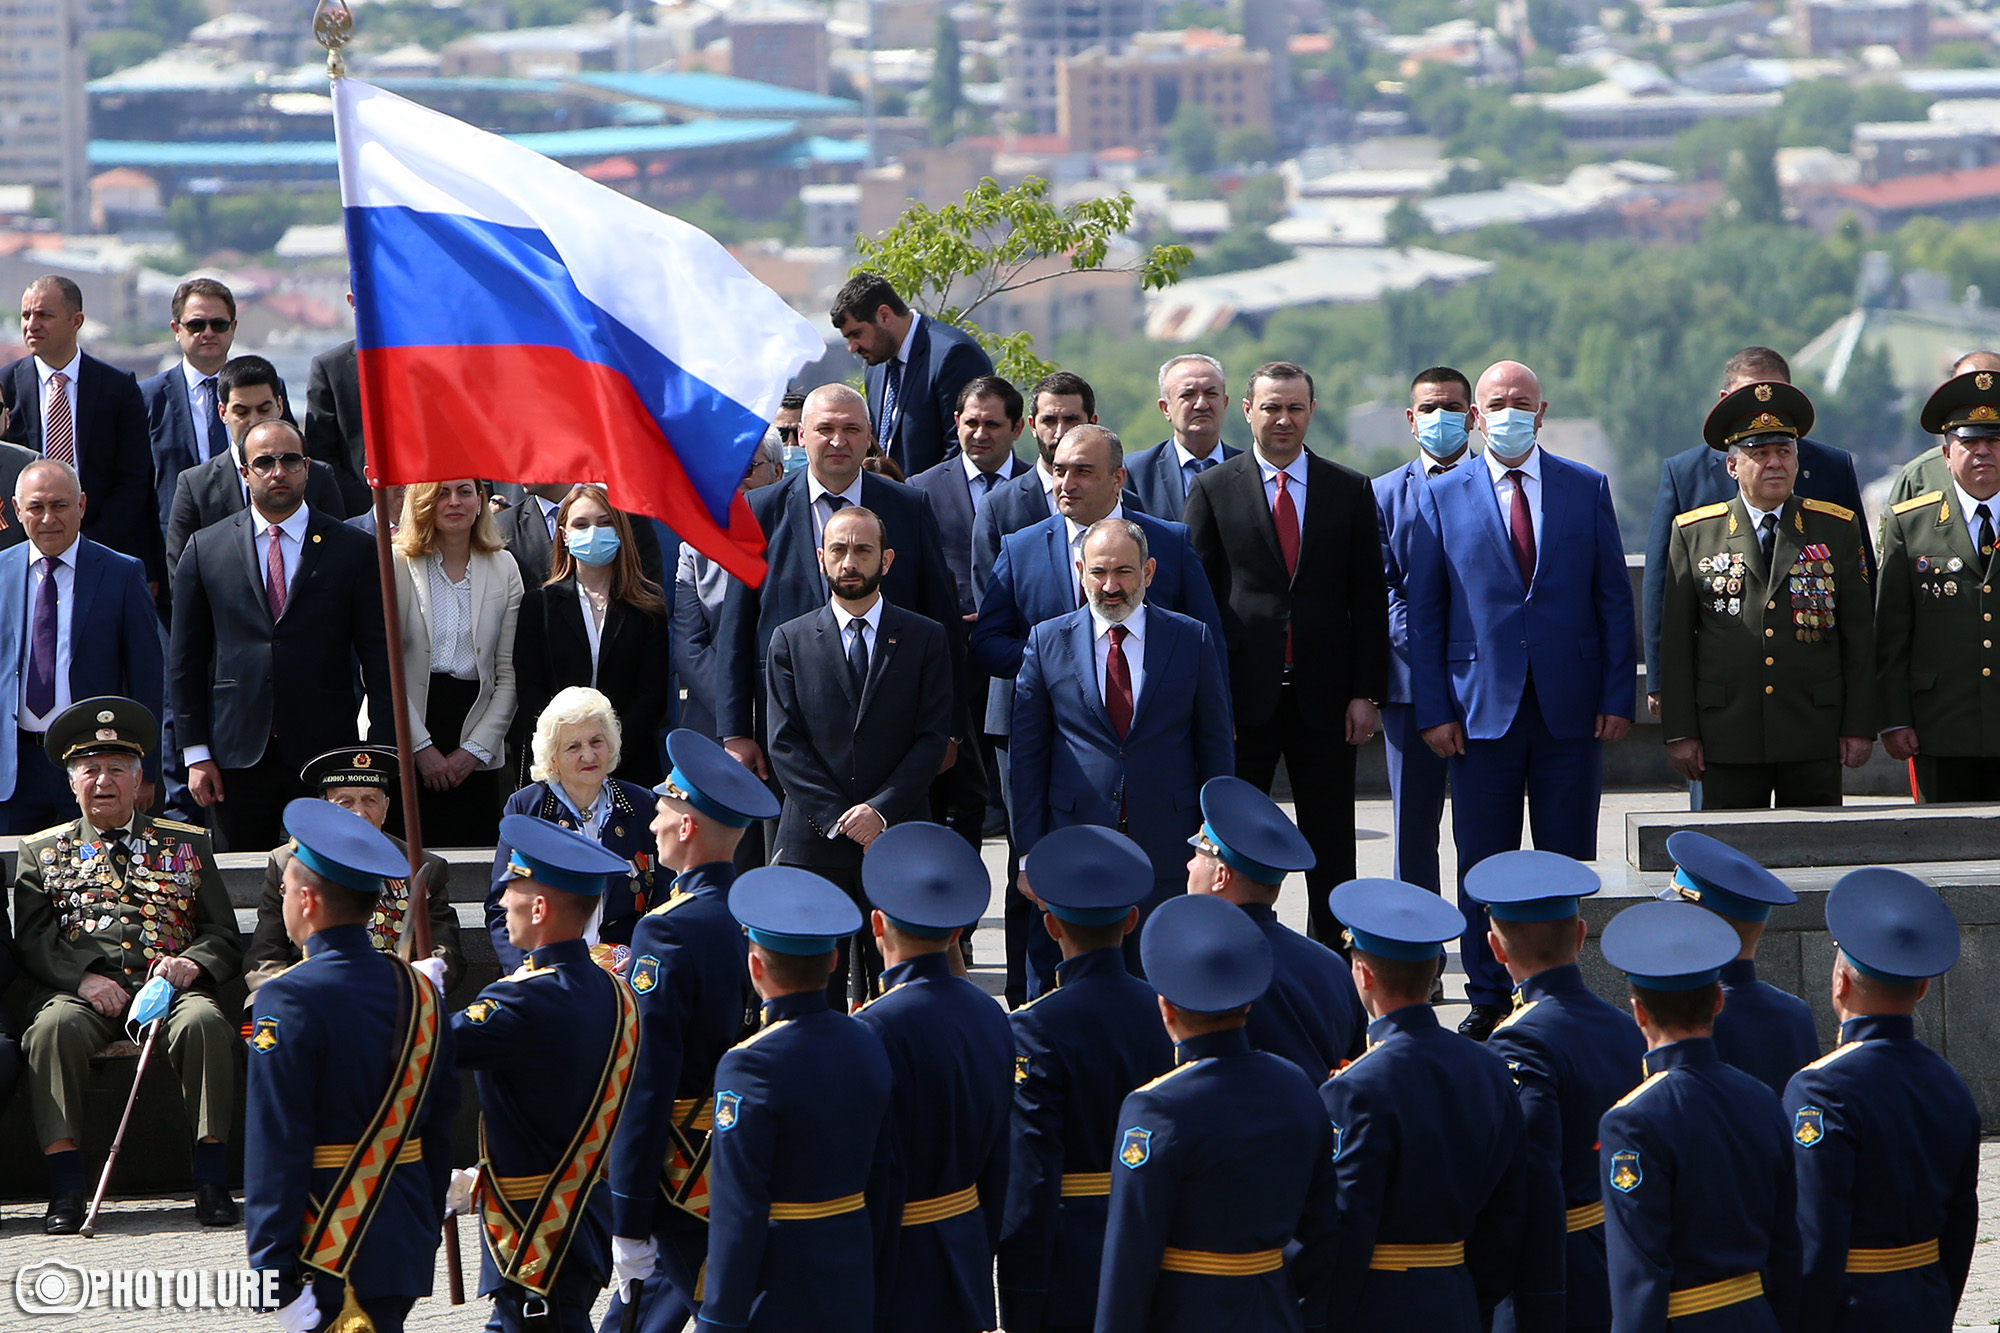 Ռուսաստանի հետ հարաբերություններում Հայաստանն իրեն դնում է չափազանց վտանգավոր վիճակում․ ինչ սպասել